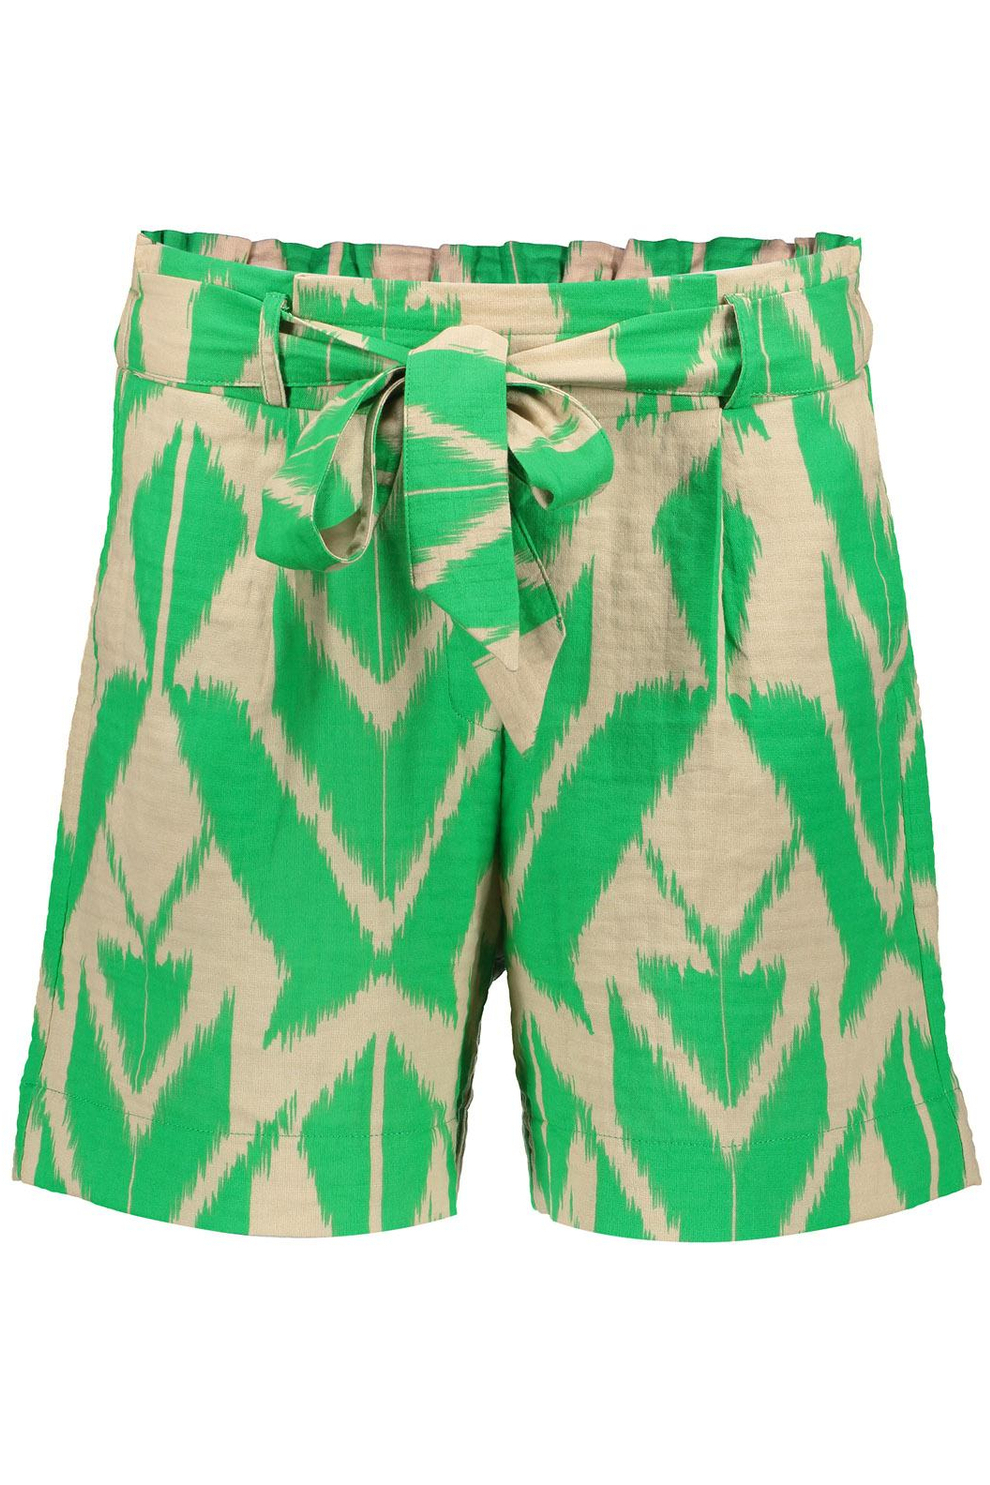 Mauve Verzakking vier keer shorts met grafische print 31267 20 geisha korte broek green/sand combi